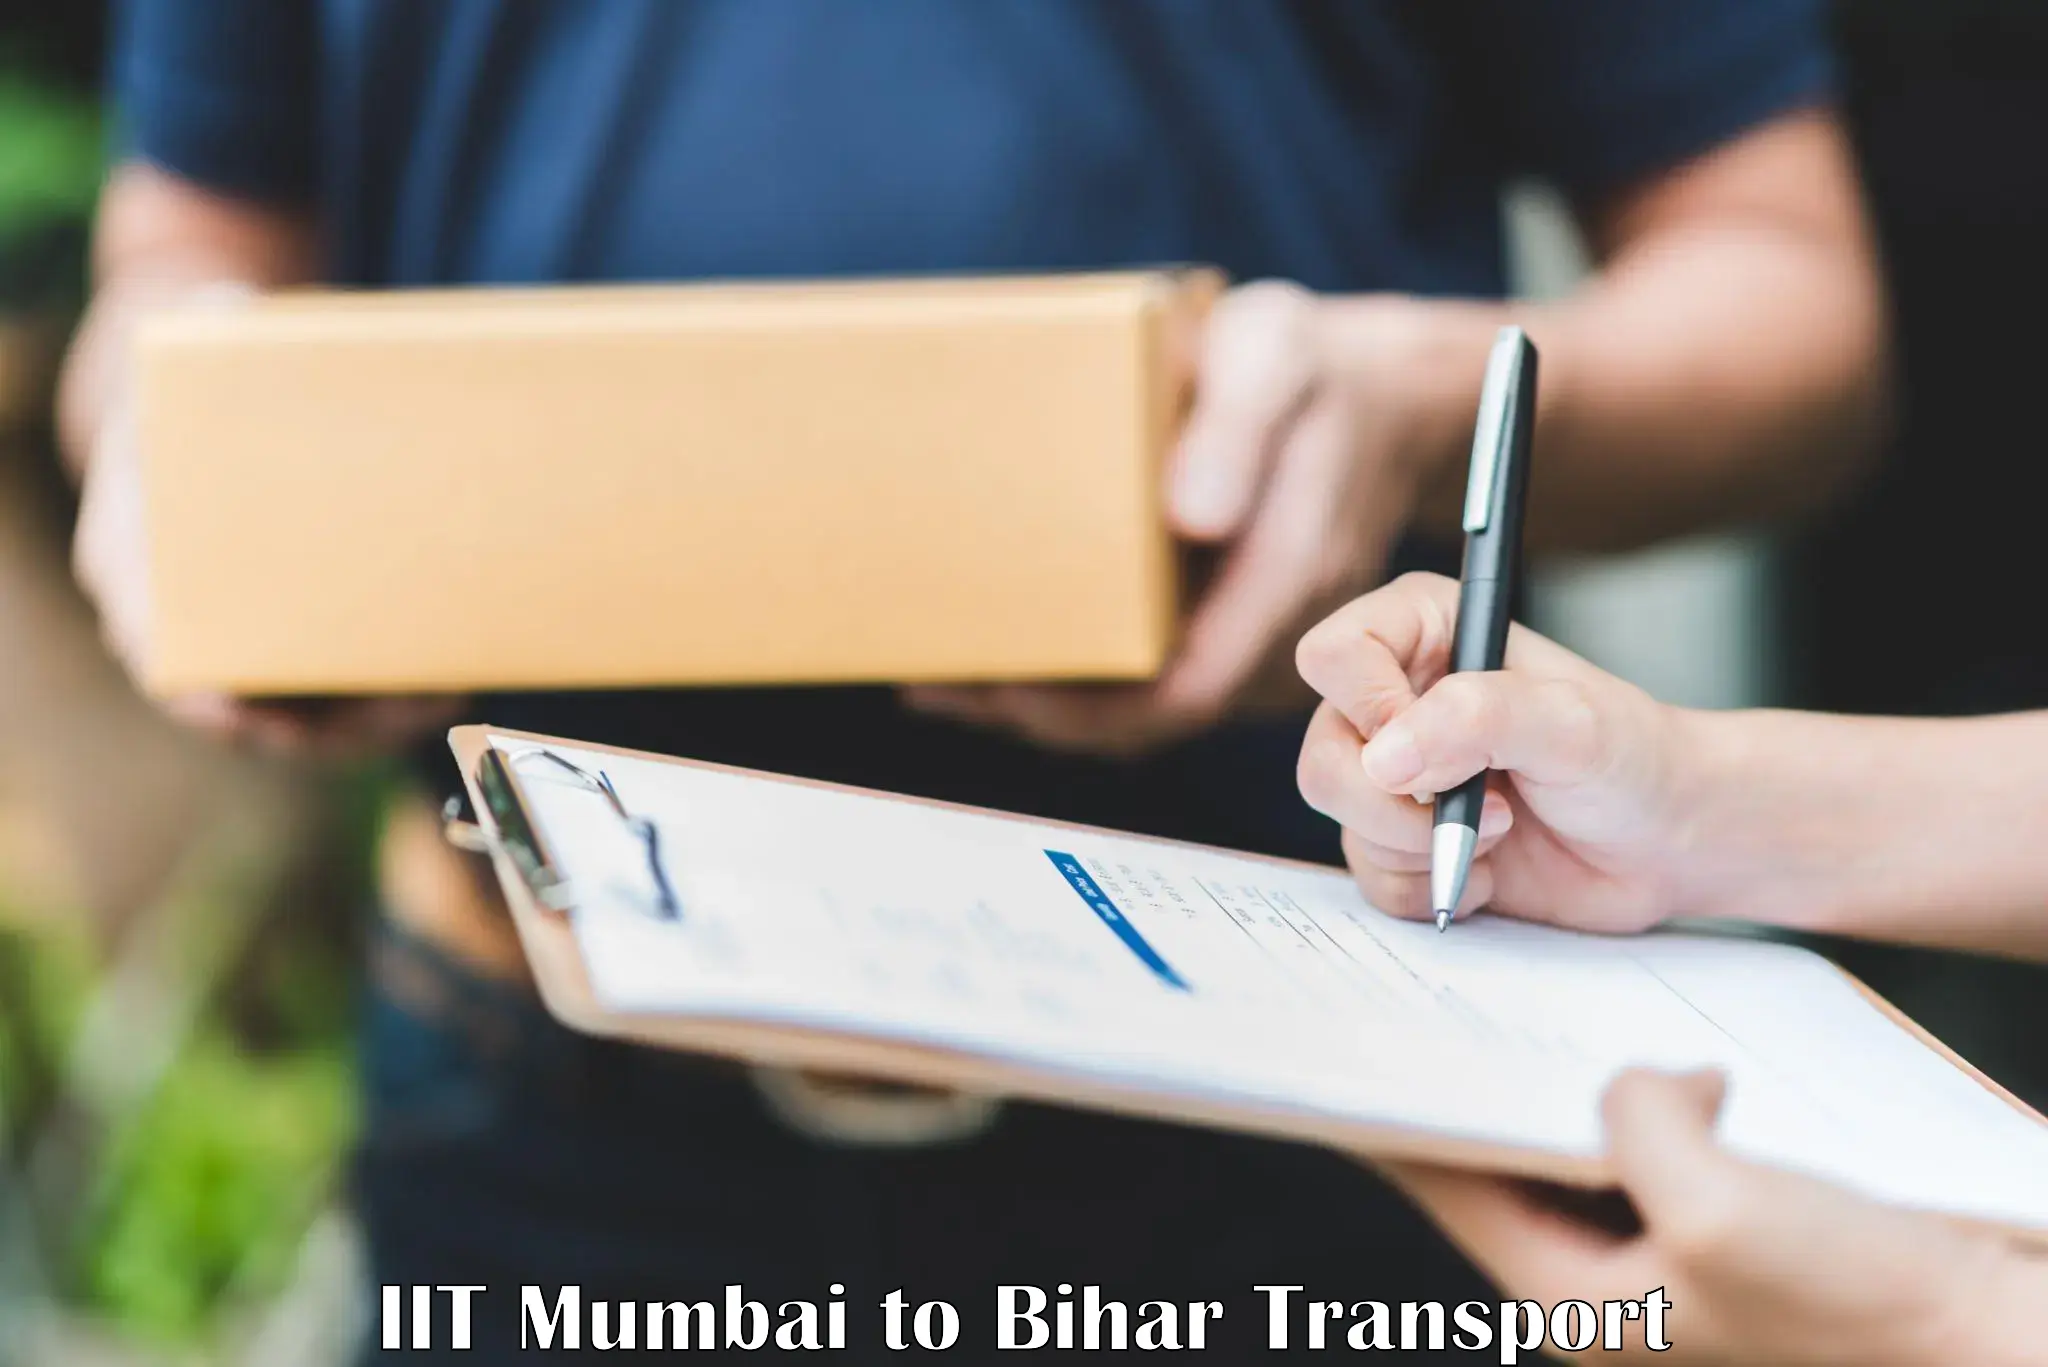 Express transport services IIT Mumbai to Bihar